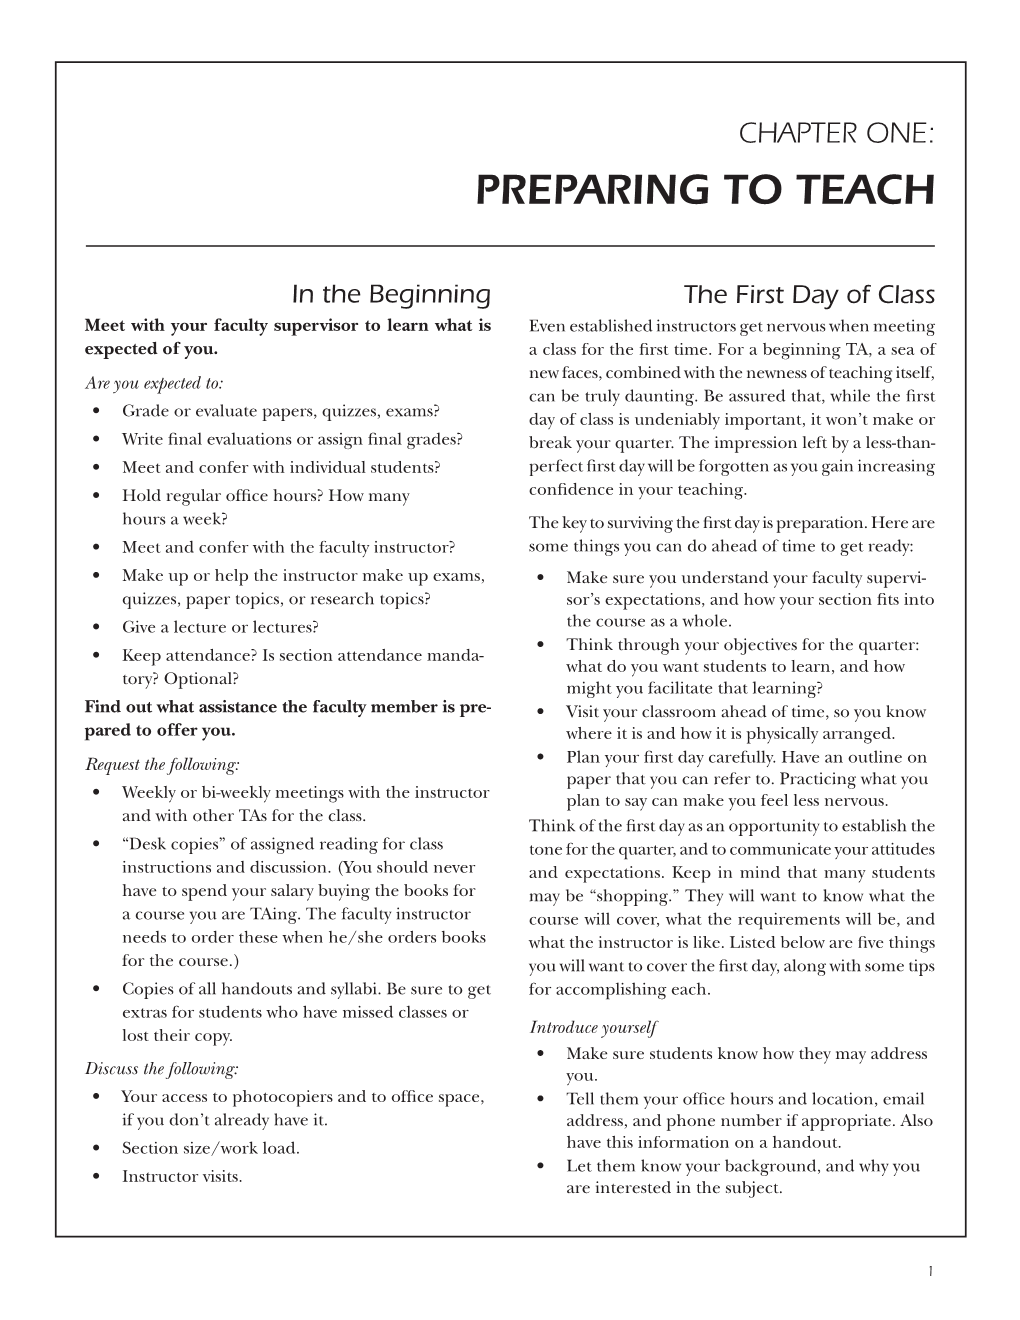 UCSC Graduate Division's Teaching Handbook